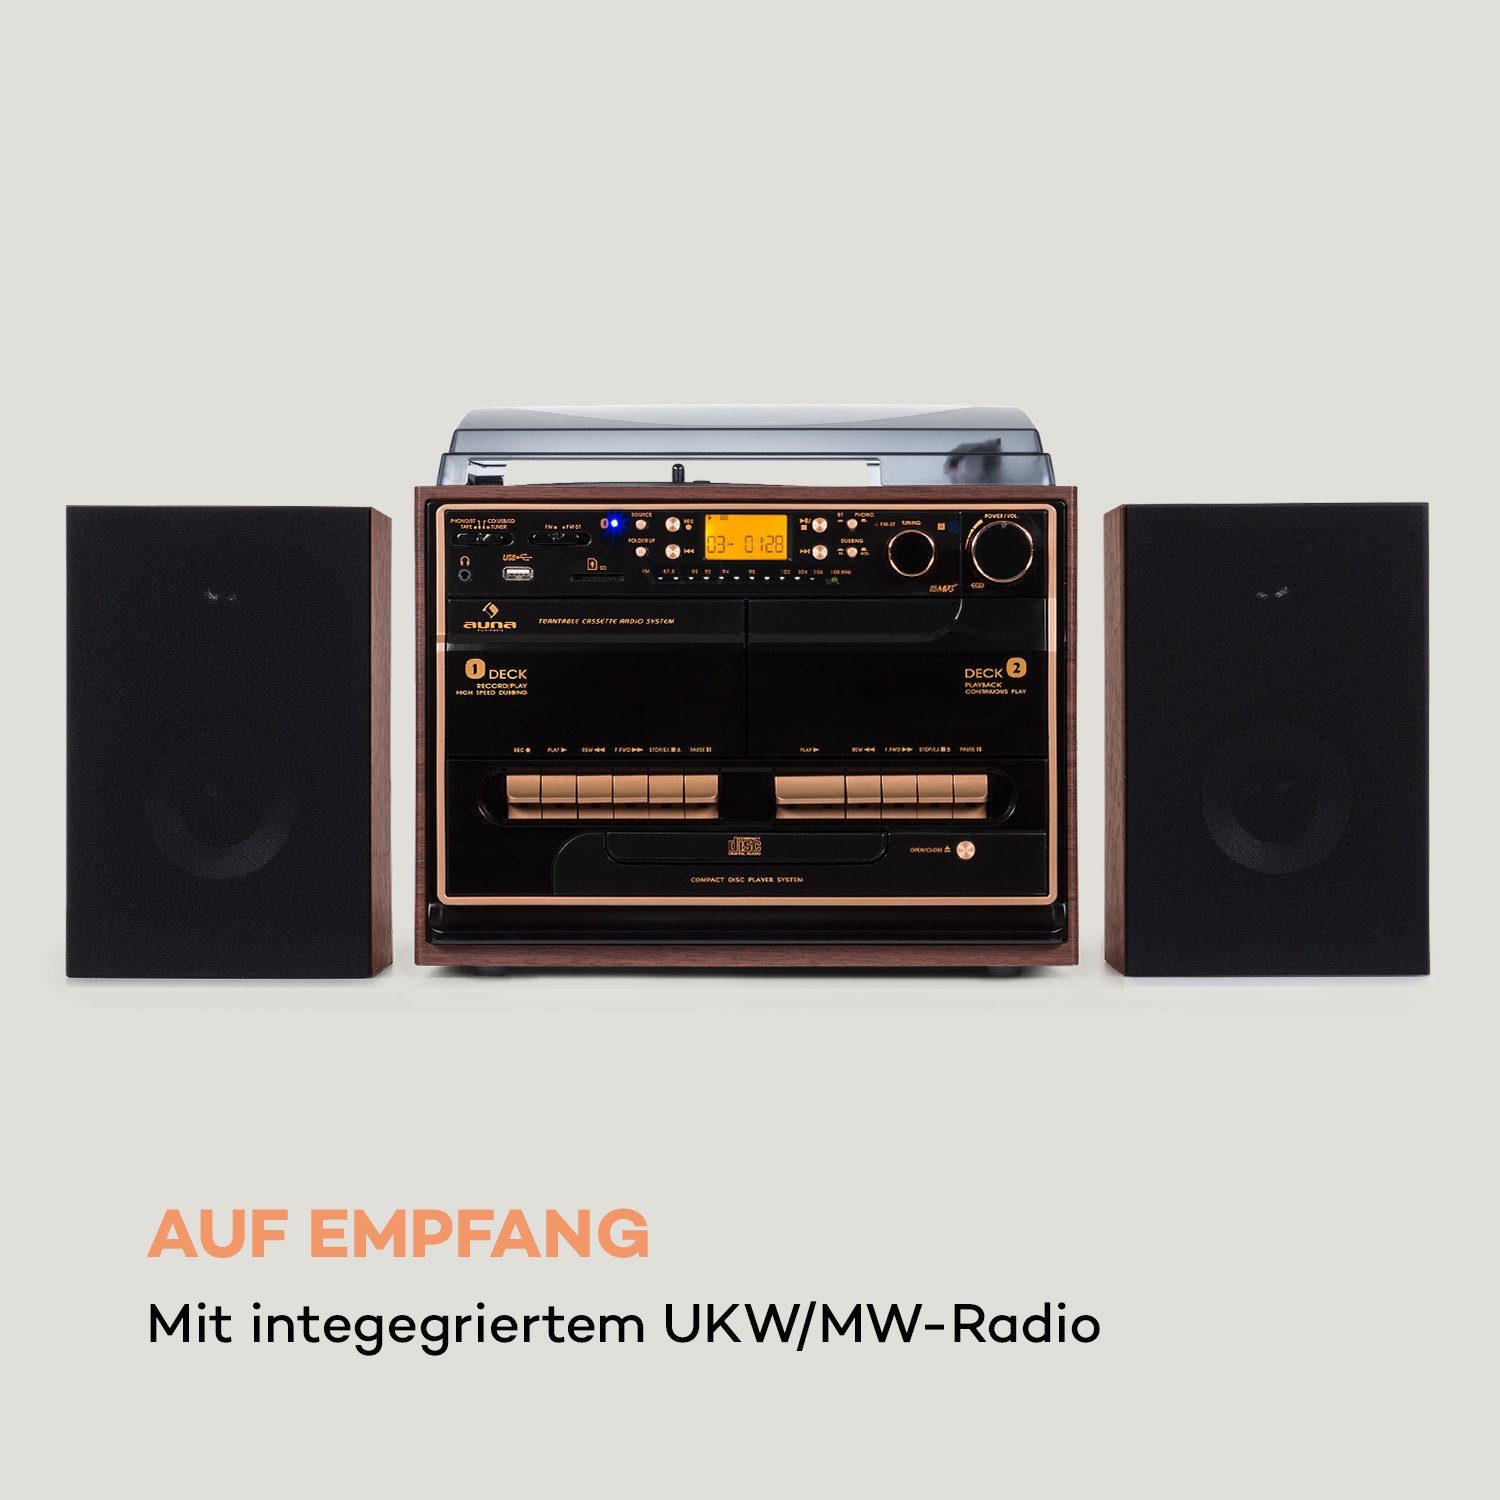 Wood 10 W) Stereoanlage (UKW/MW-Radio, Auna 388-BT